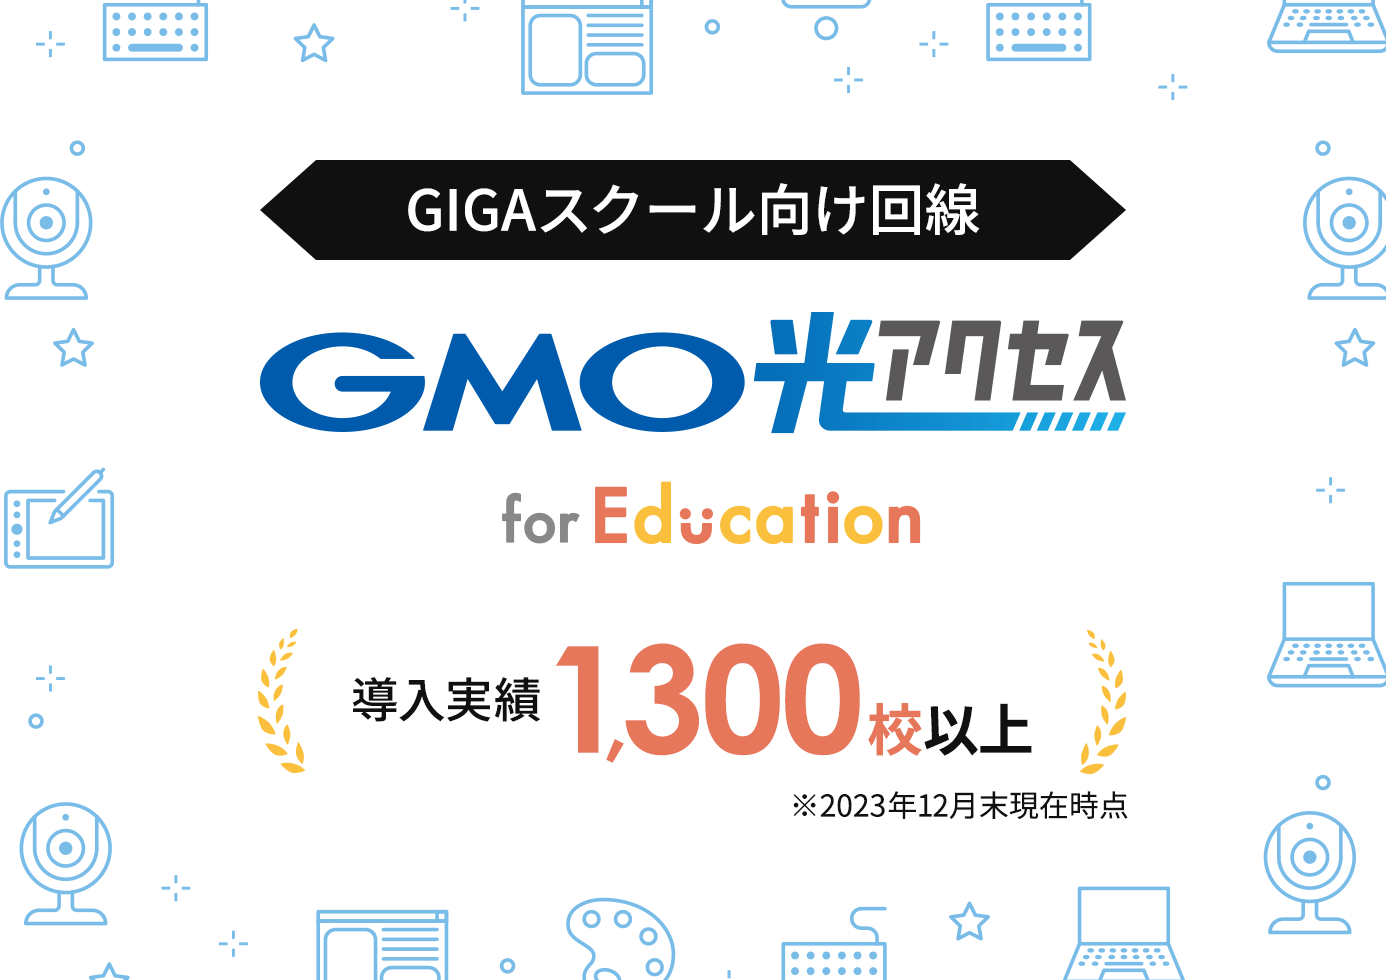 GIGAスクール向け回線　GMO光アクセス for Education